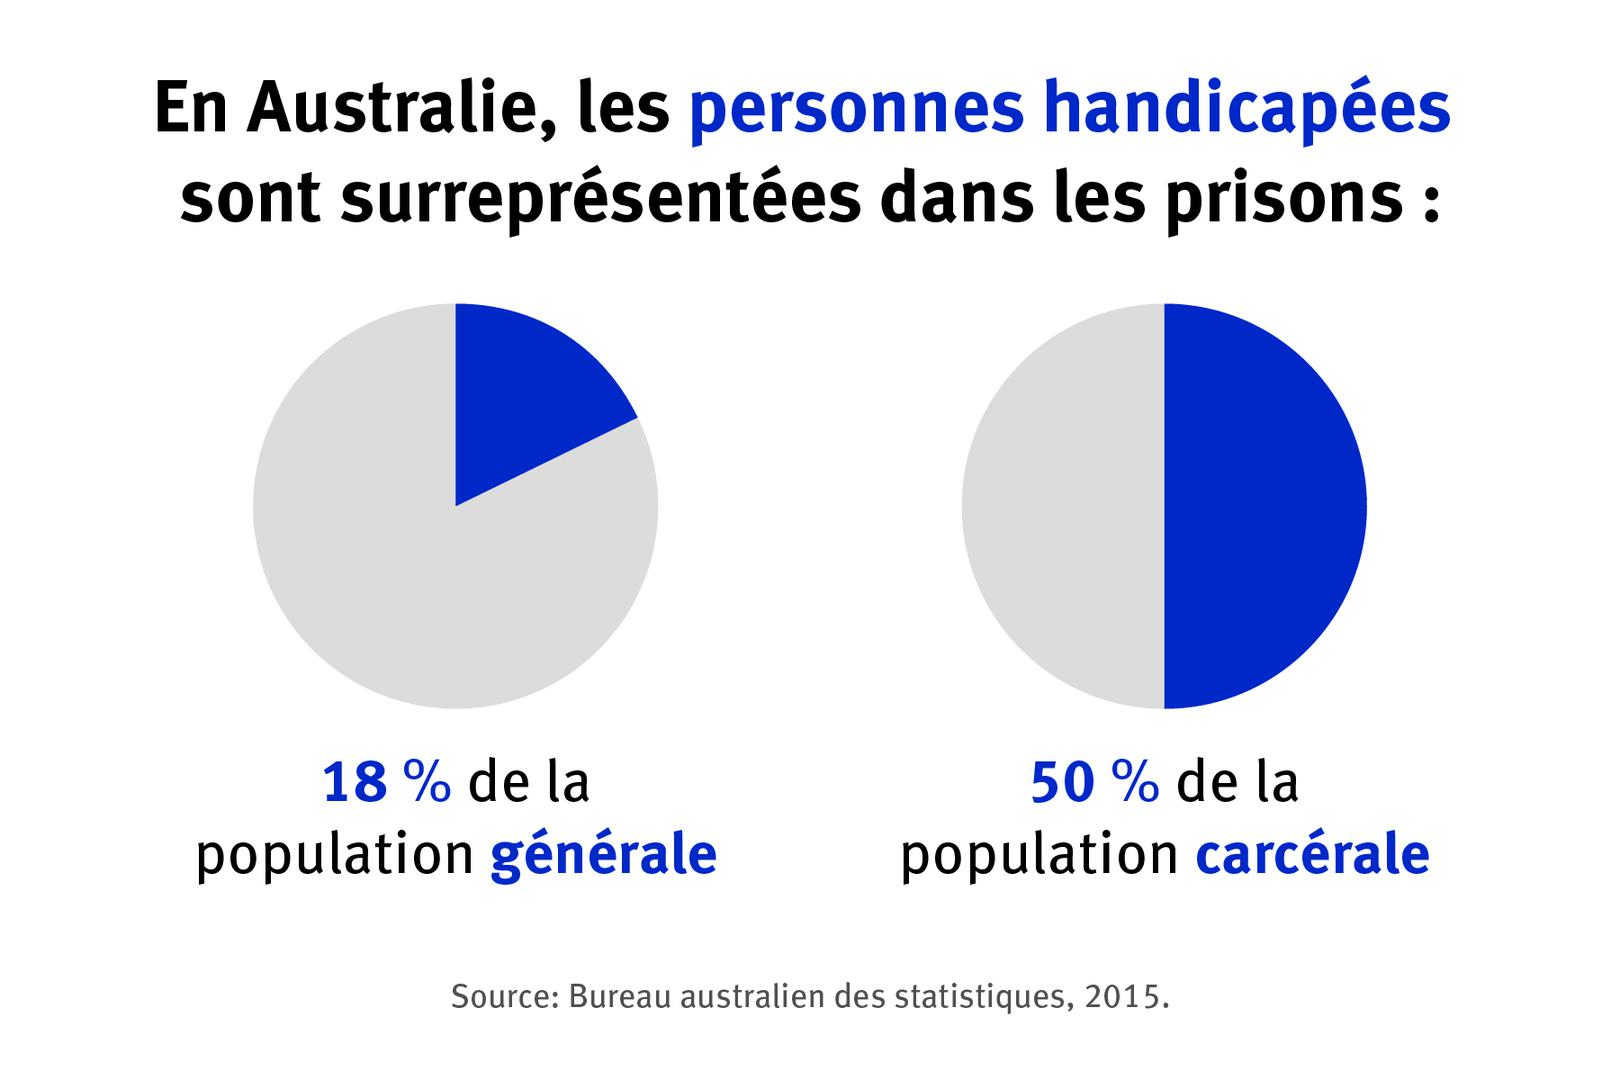 En Australie, les personnes handicapees sont surrerepresentees dans les prisons